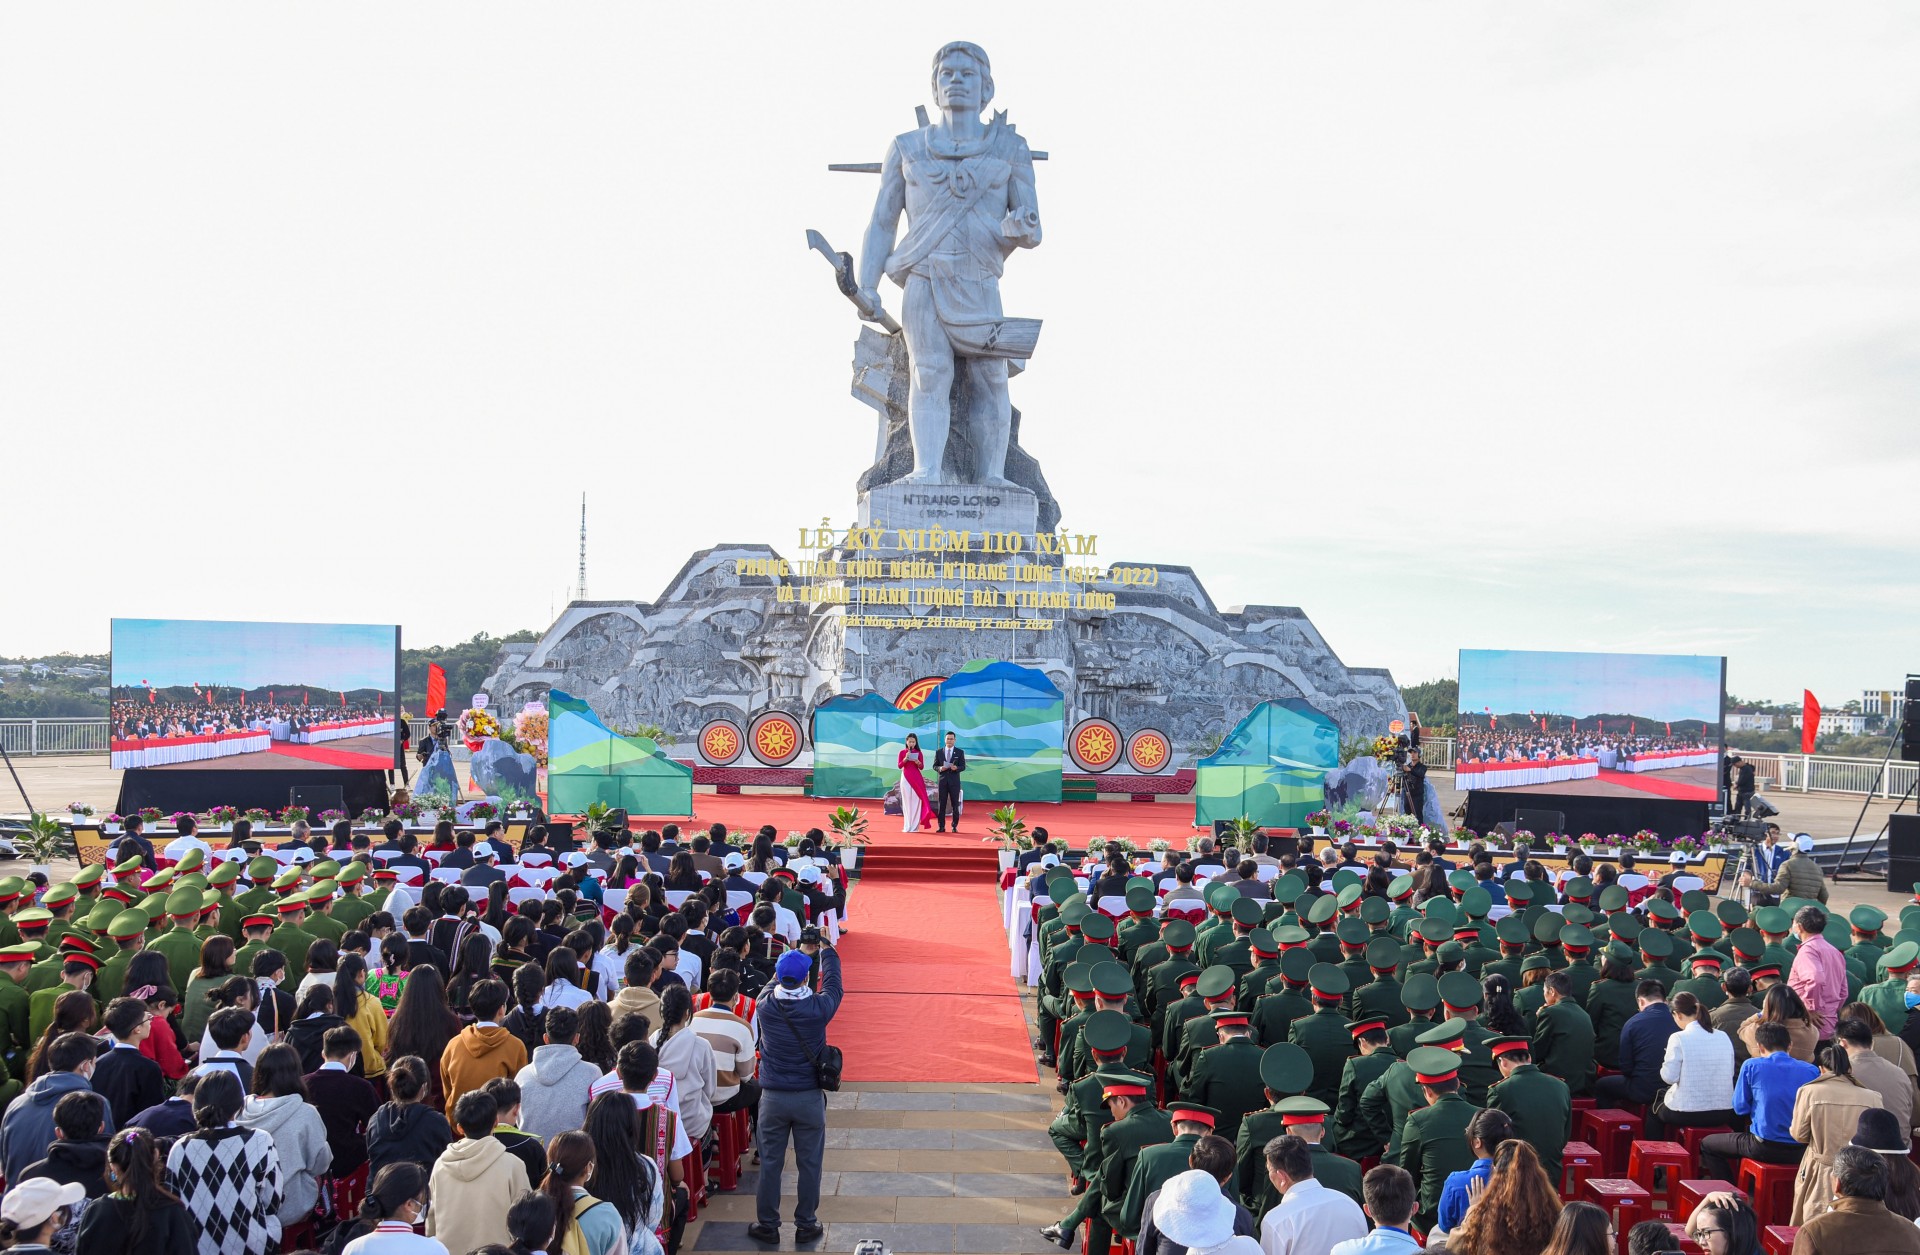 Đắk Nông: Khánh thành tượng đài anh hùng N’Trang Lơng